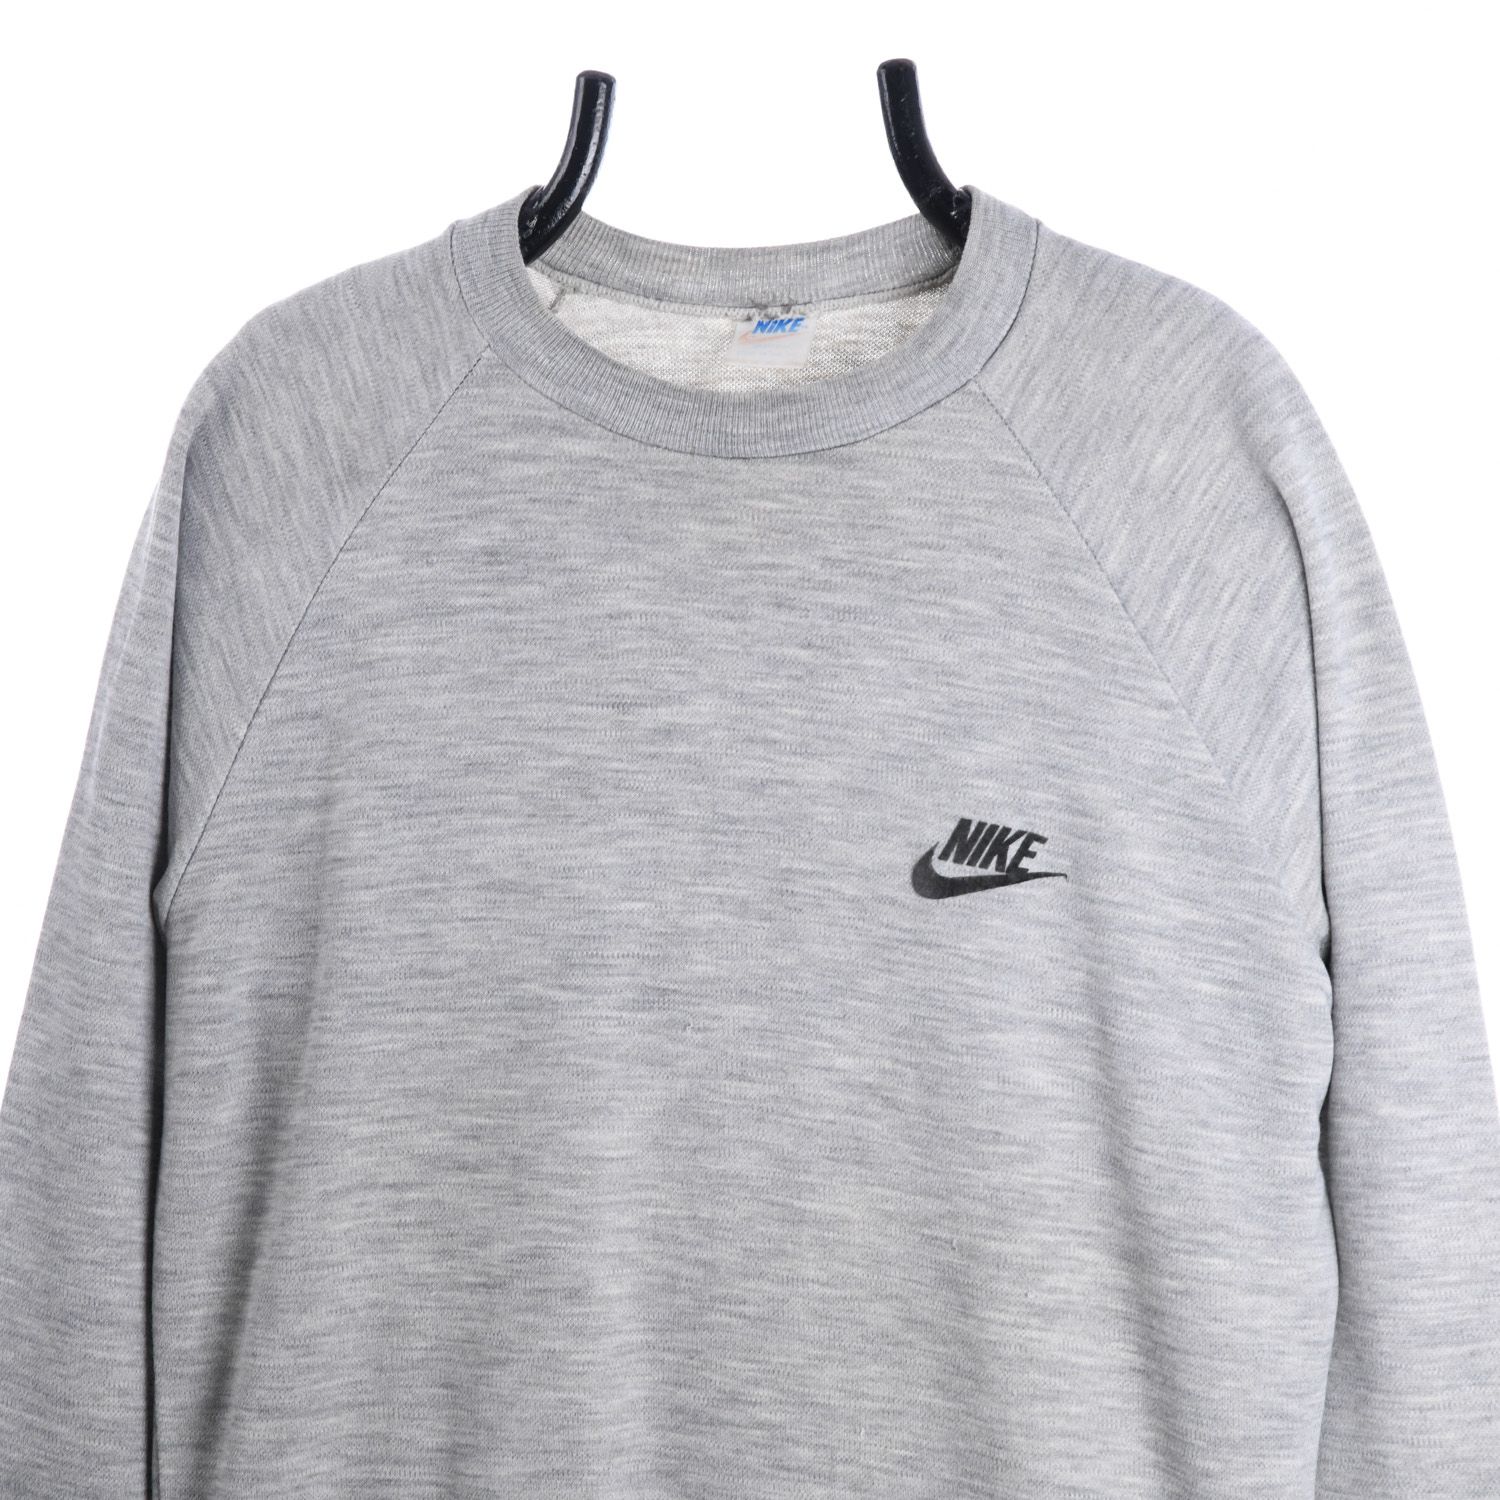 Nike Late 1970s Sweatshirt